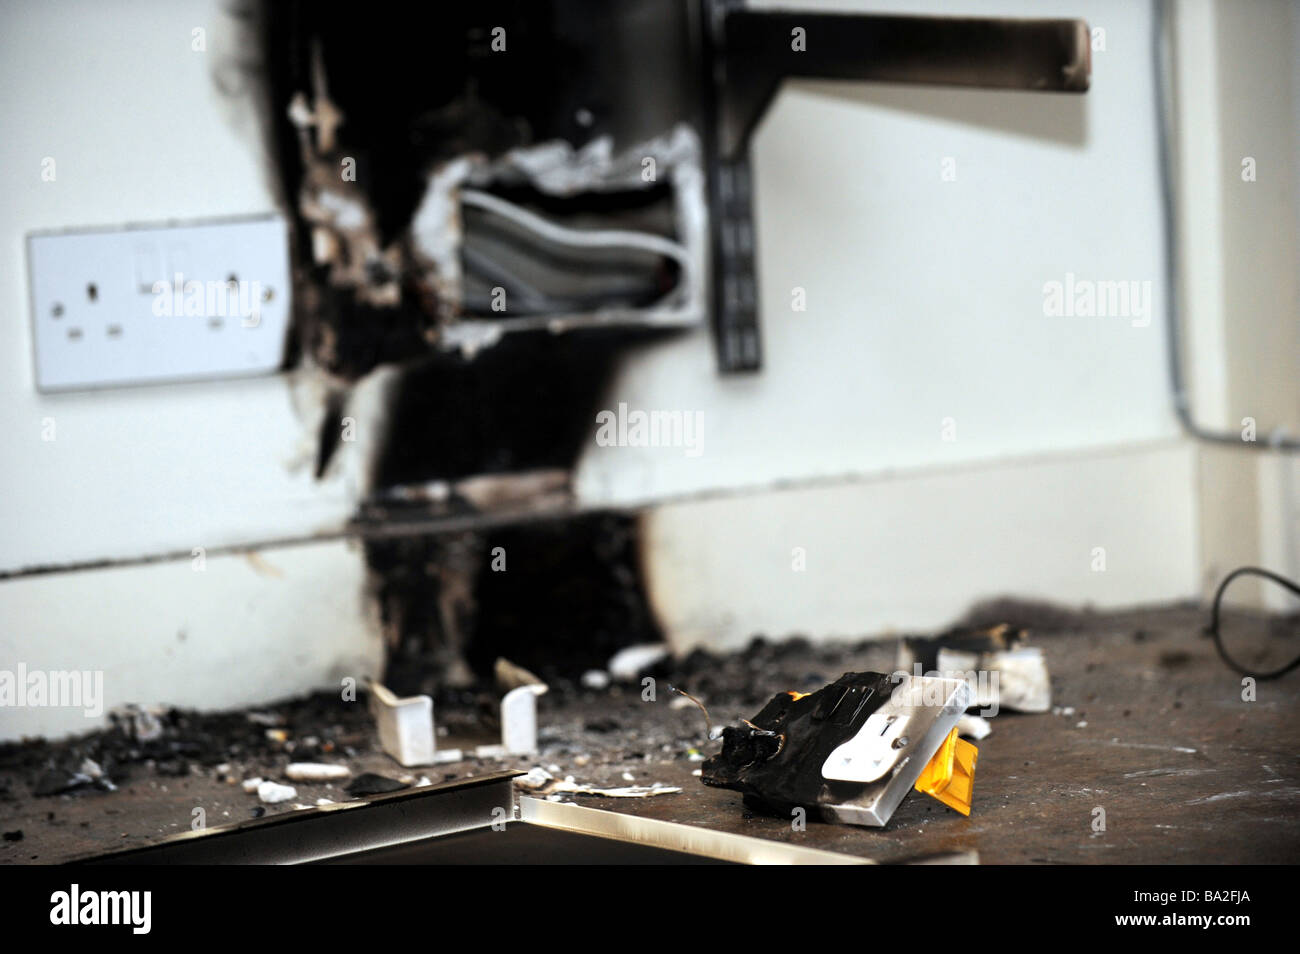 Verkohlten Überreste eine verbrannte Steckdose nachdem eine Plug-in  Lufterfrischer geschmolzen und in einem Geschäft gefangen Feuer  Stockfotografie - Alamy